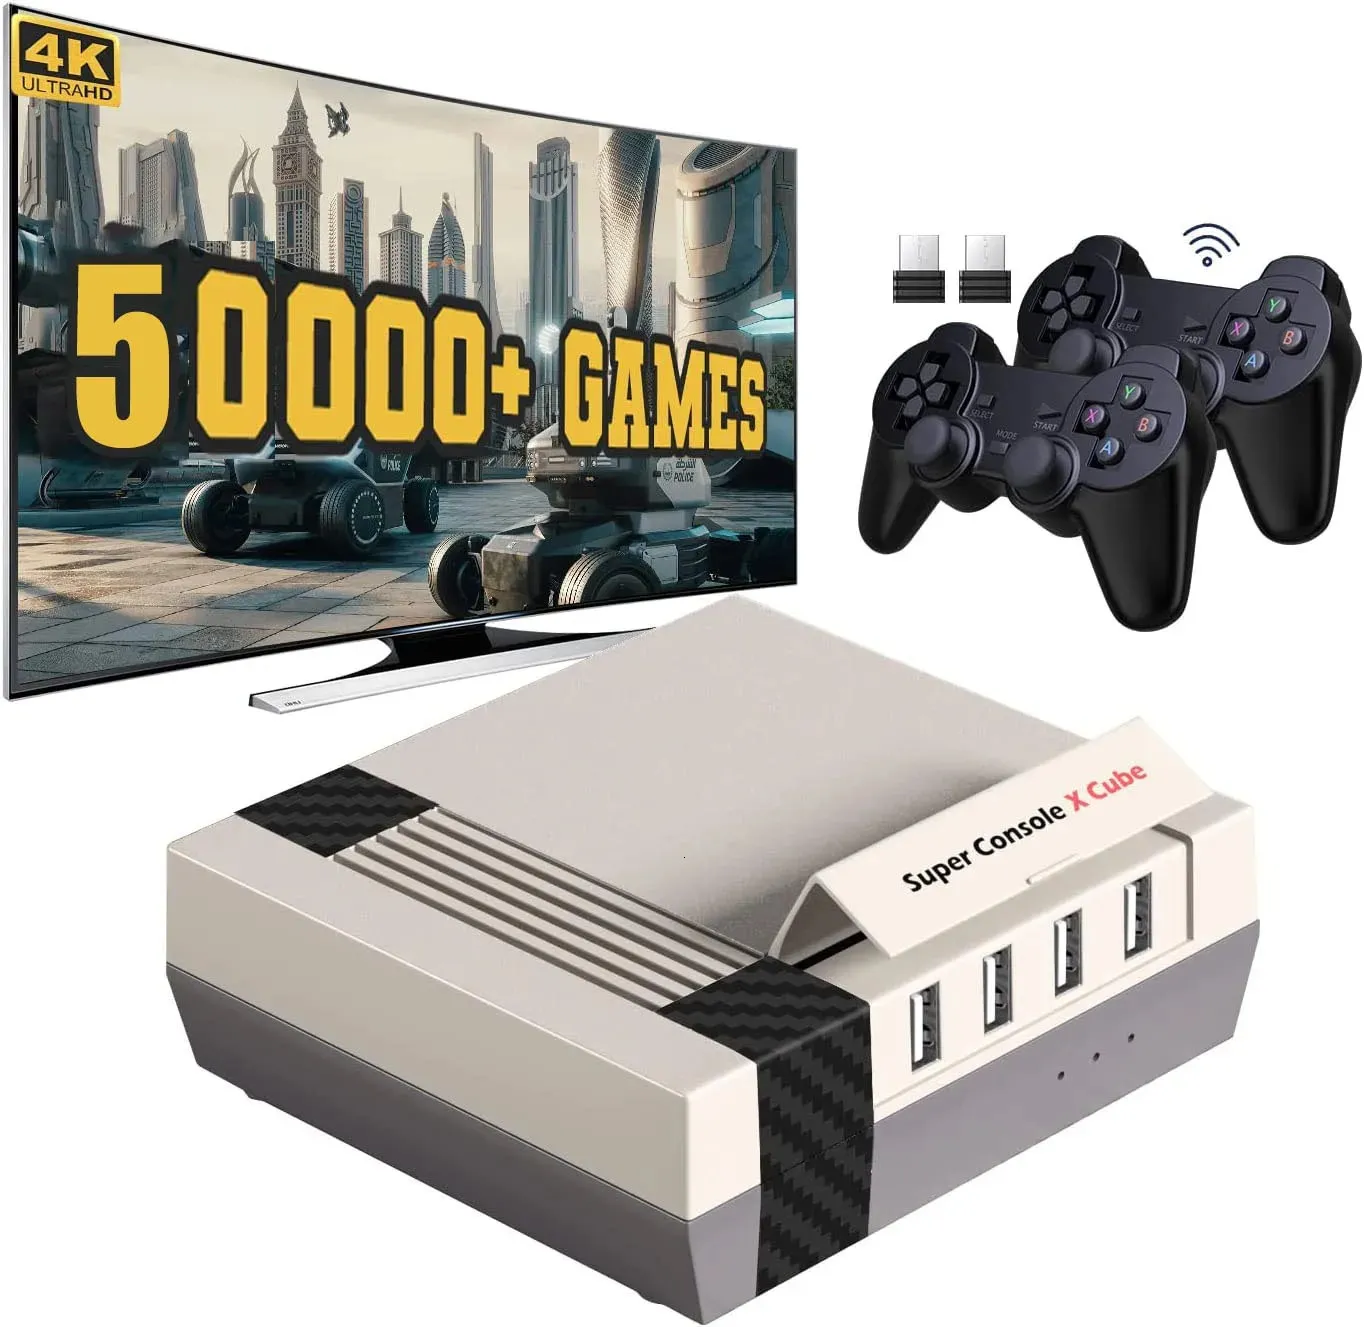 وحدة التحكم في الألعاب joysticks kinhank ألعاب الفيديو لوحات التحكم Super Console x Cube Retro Game مع 60 000 ألعاب كلاسيكية متوافقة مع PSP/PS1/DC إلخ 231025